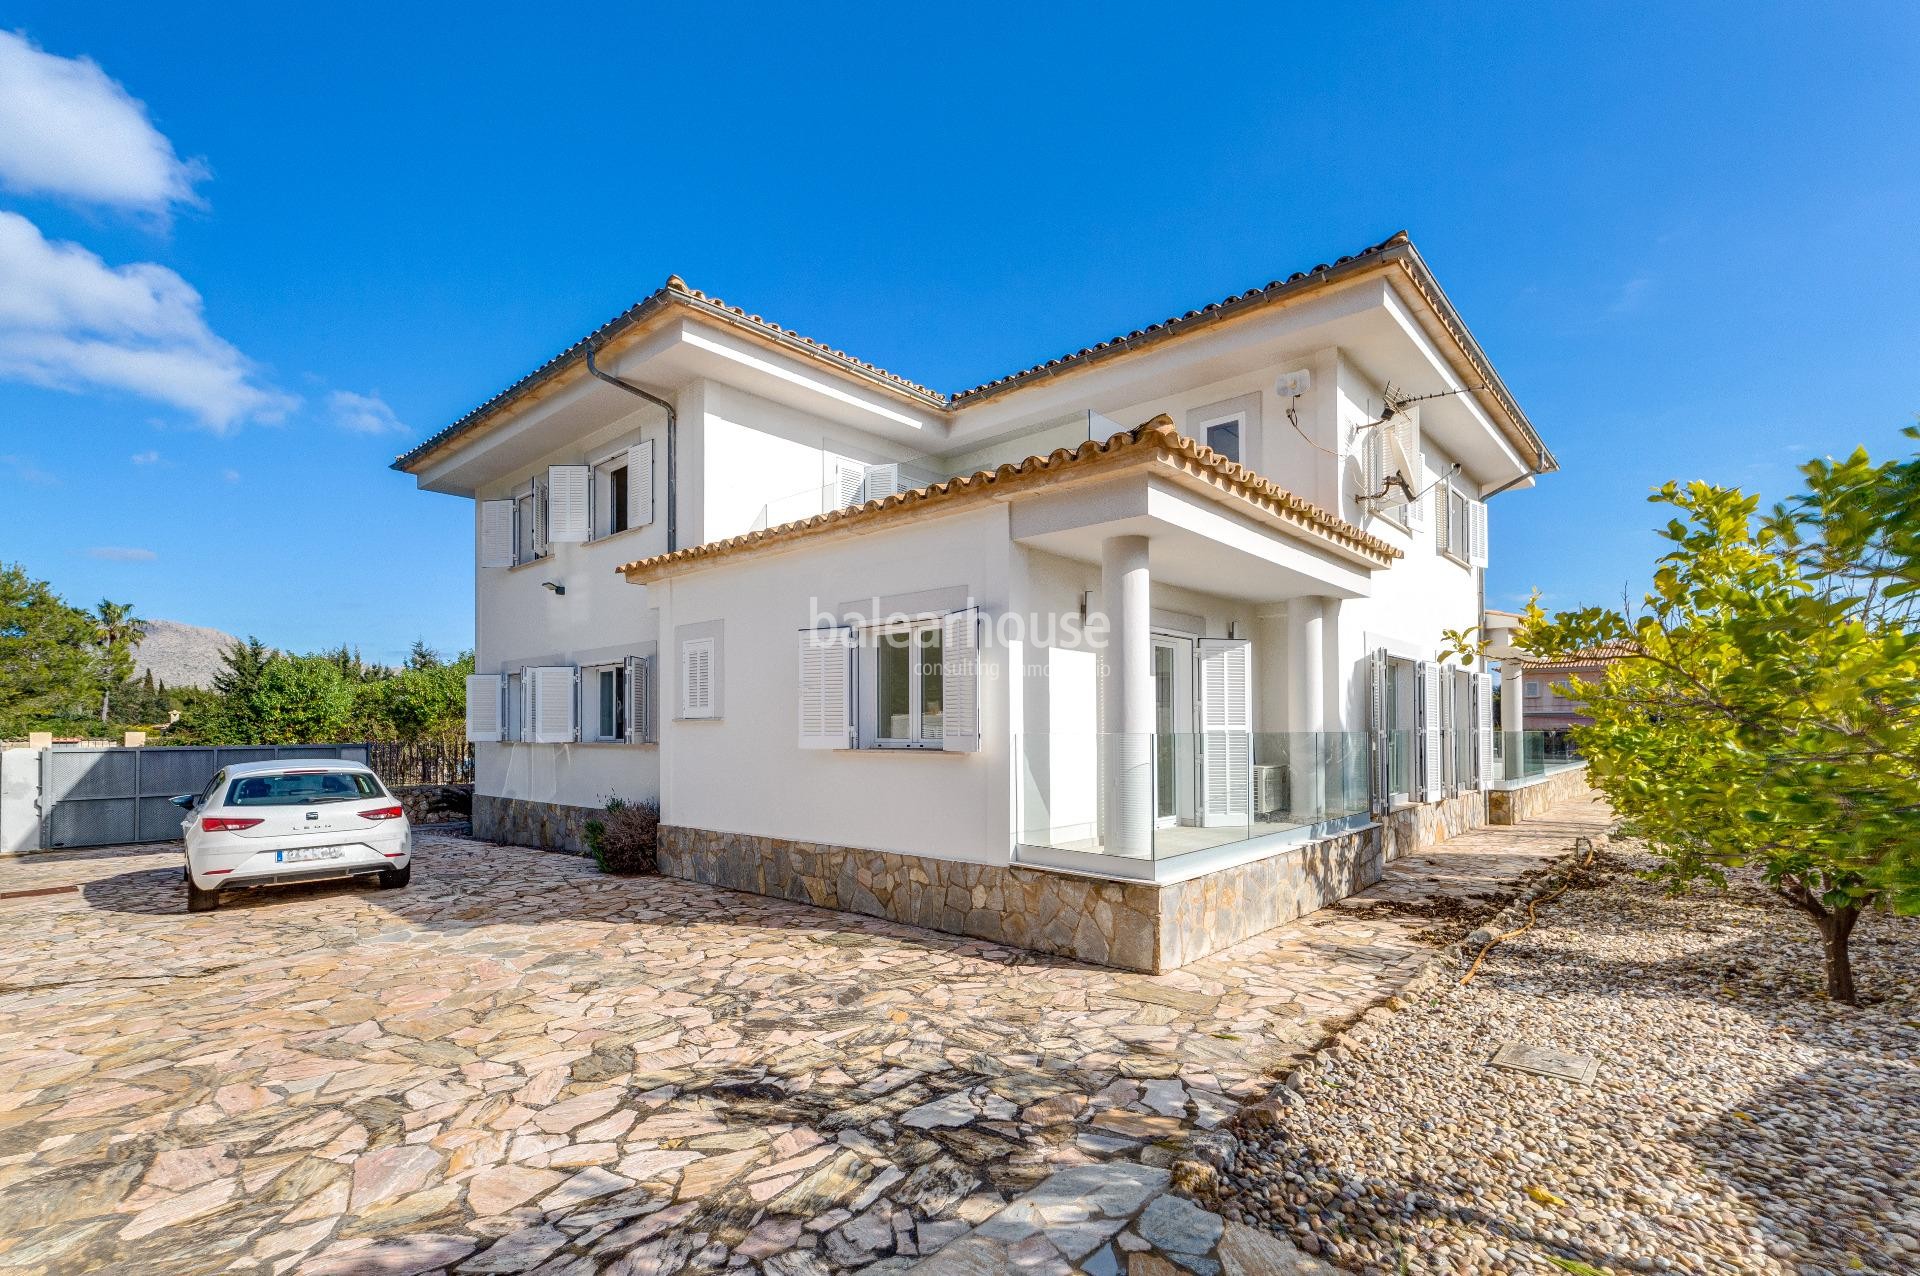 Villa im mediterranen Stil nur wenige Minuten vom Meer entfernt in Puerto Pollensa